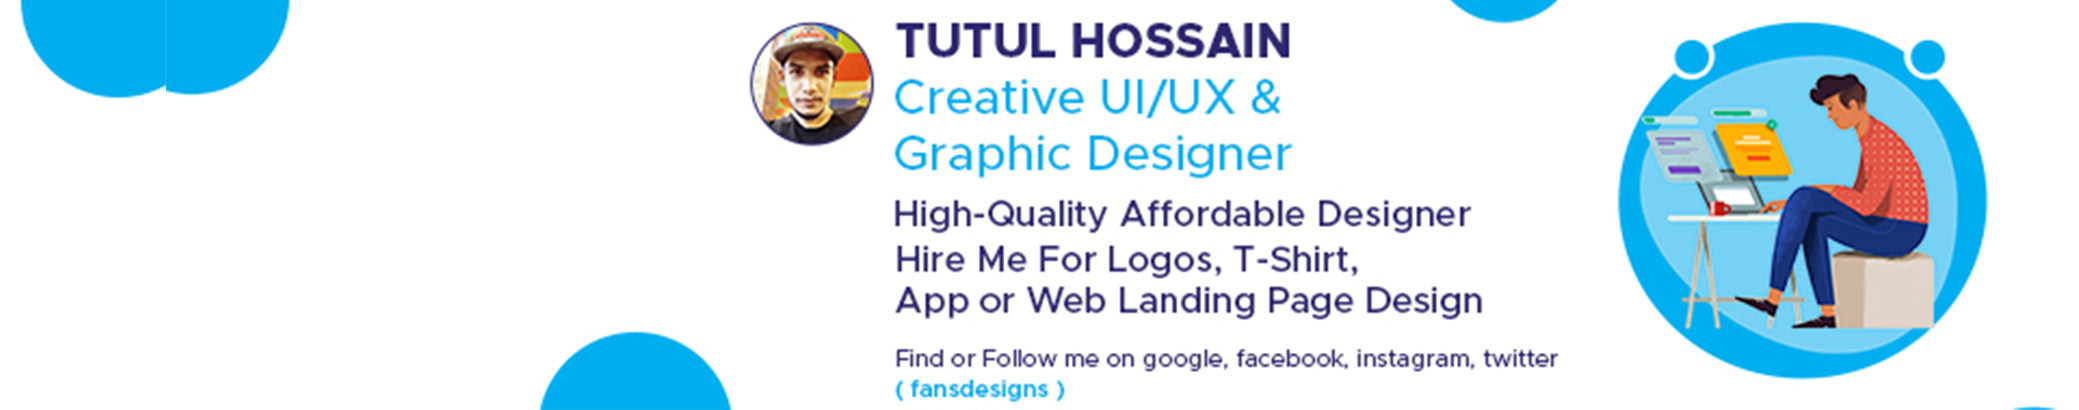 Profil-Banner von Tutul Hossain